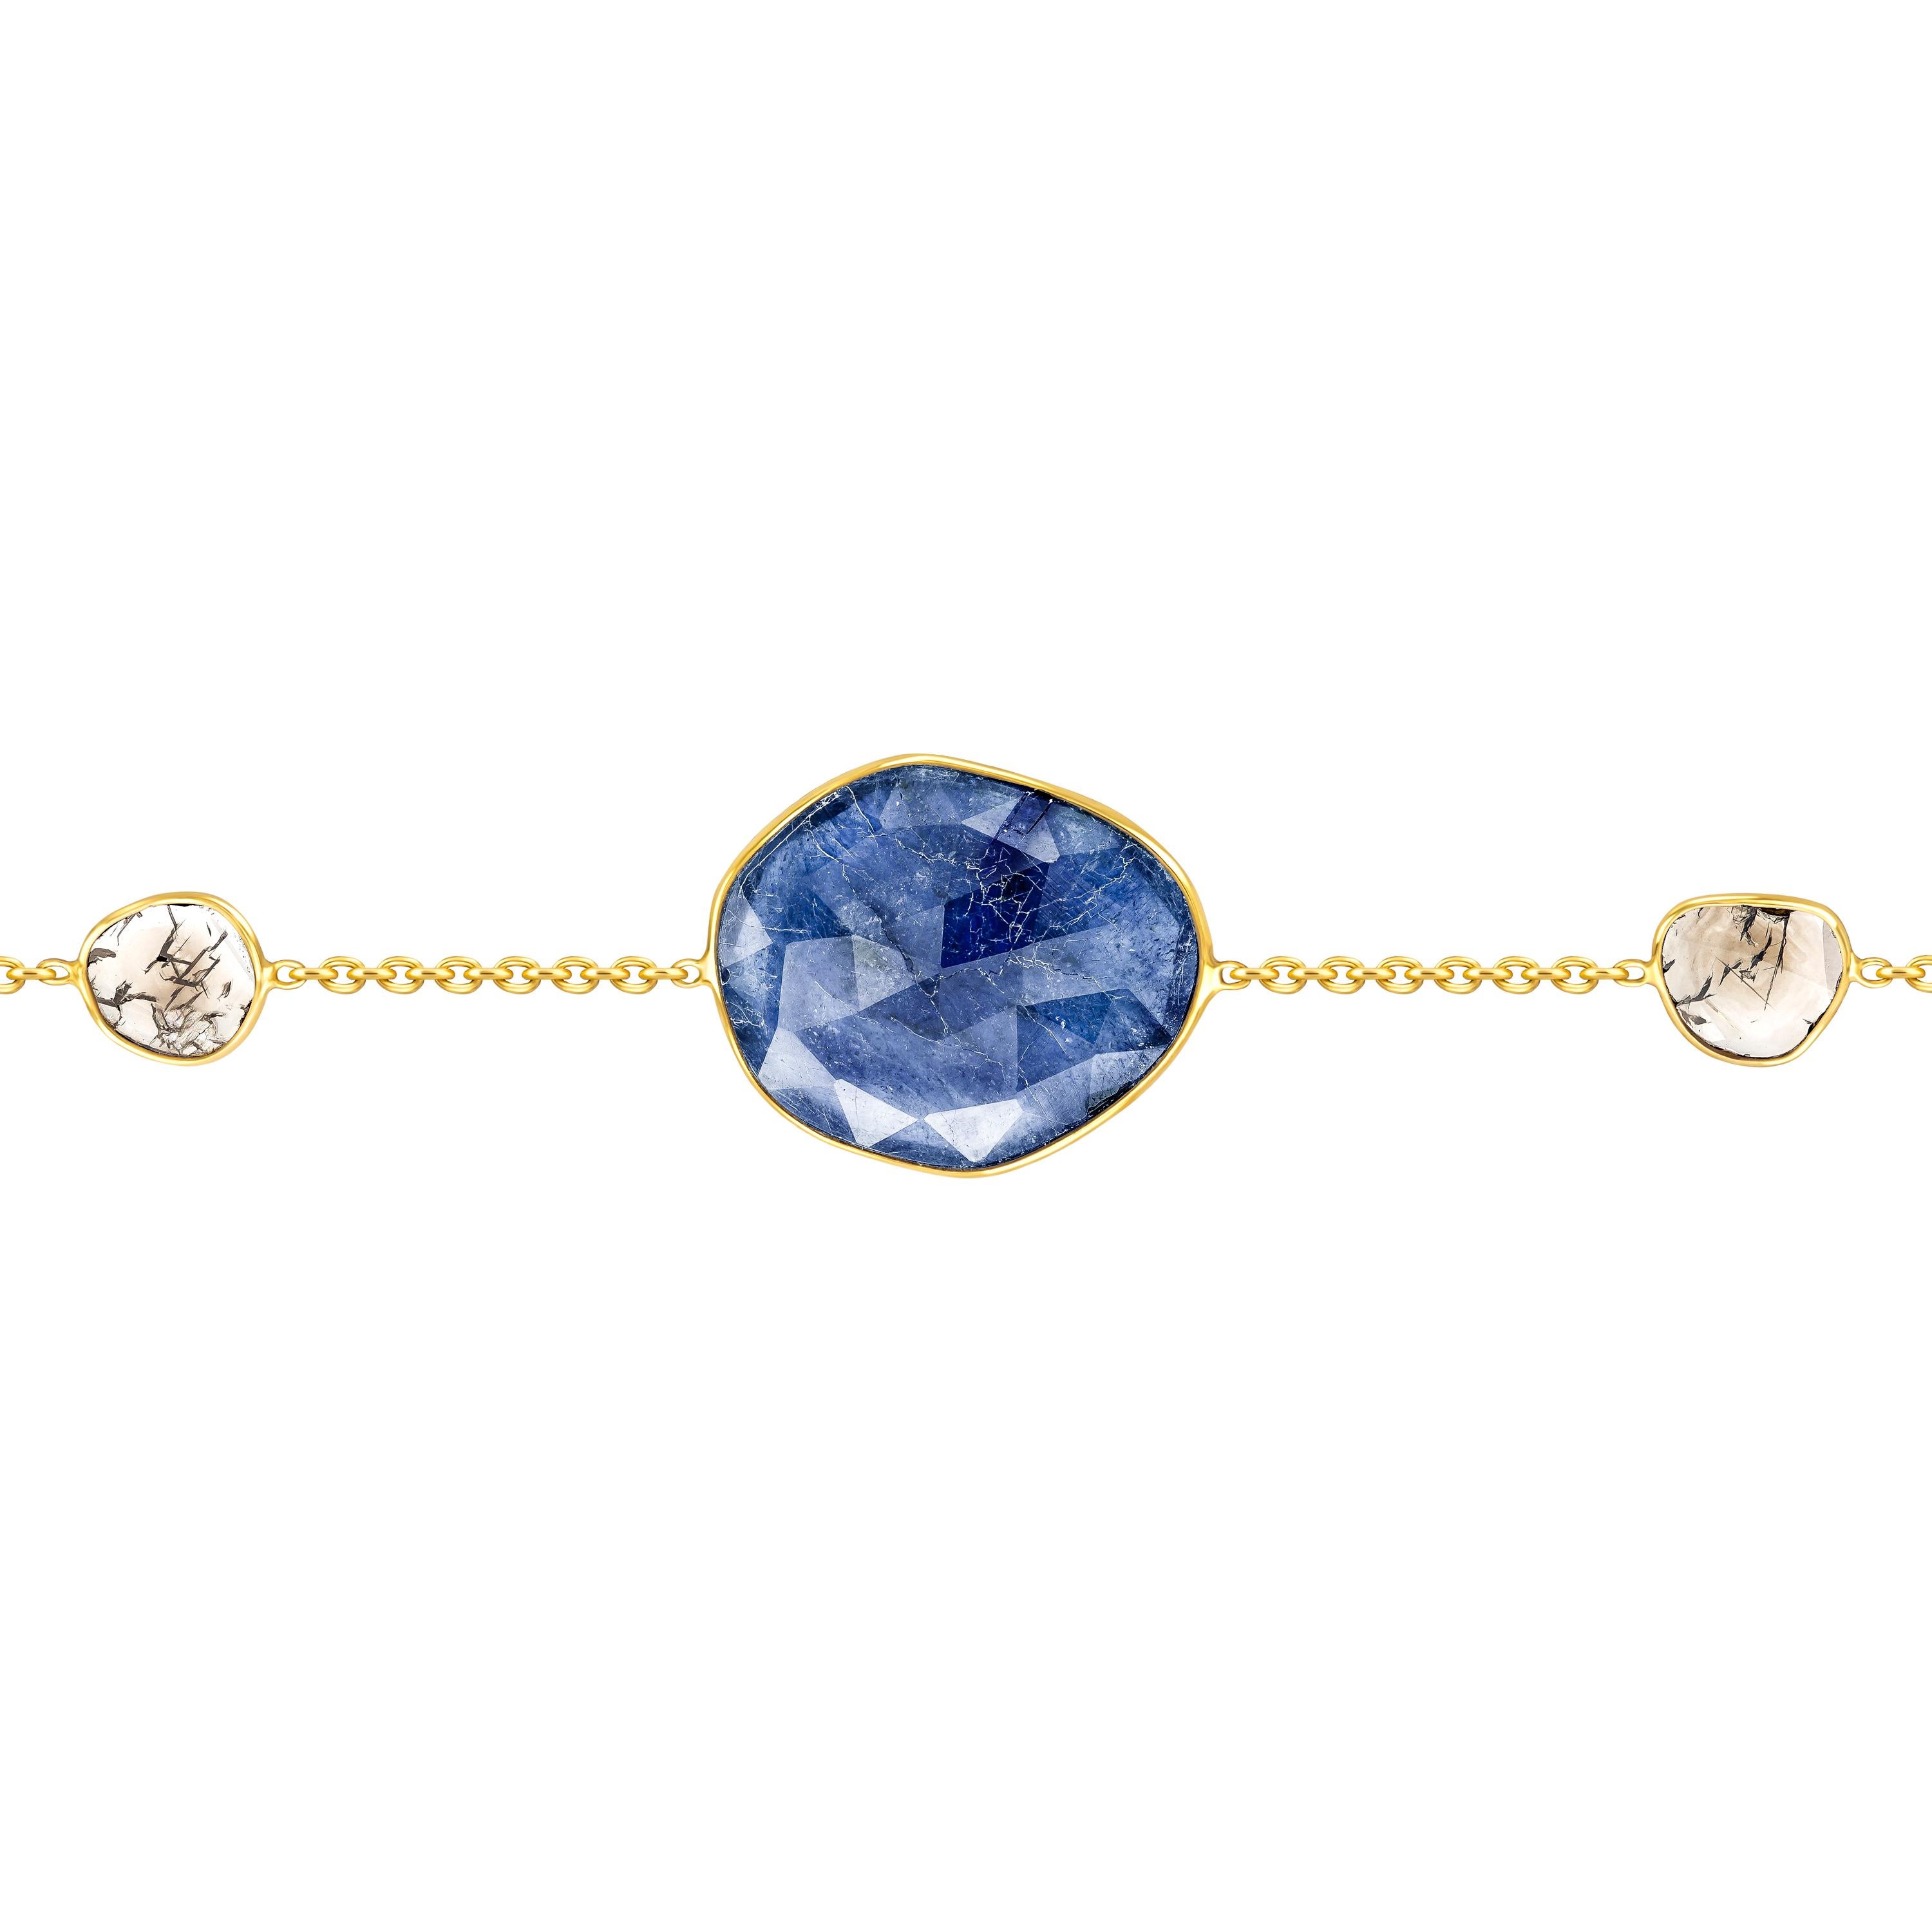 Schmücken Sie Ihr Handgelenk mit diesem wunderschönen Armband mit 7,45 Karat blauem Saphir im Rosenschliff aus der Artisan-Kollektion mit 0,35 Karat in zwei Diamantscheiben, gefasst in 18 Karat Gelbgold. Jedes Stück ist handgefertigt mit einem